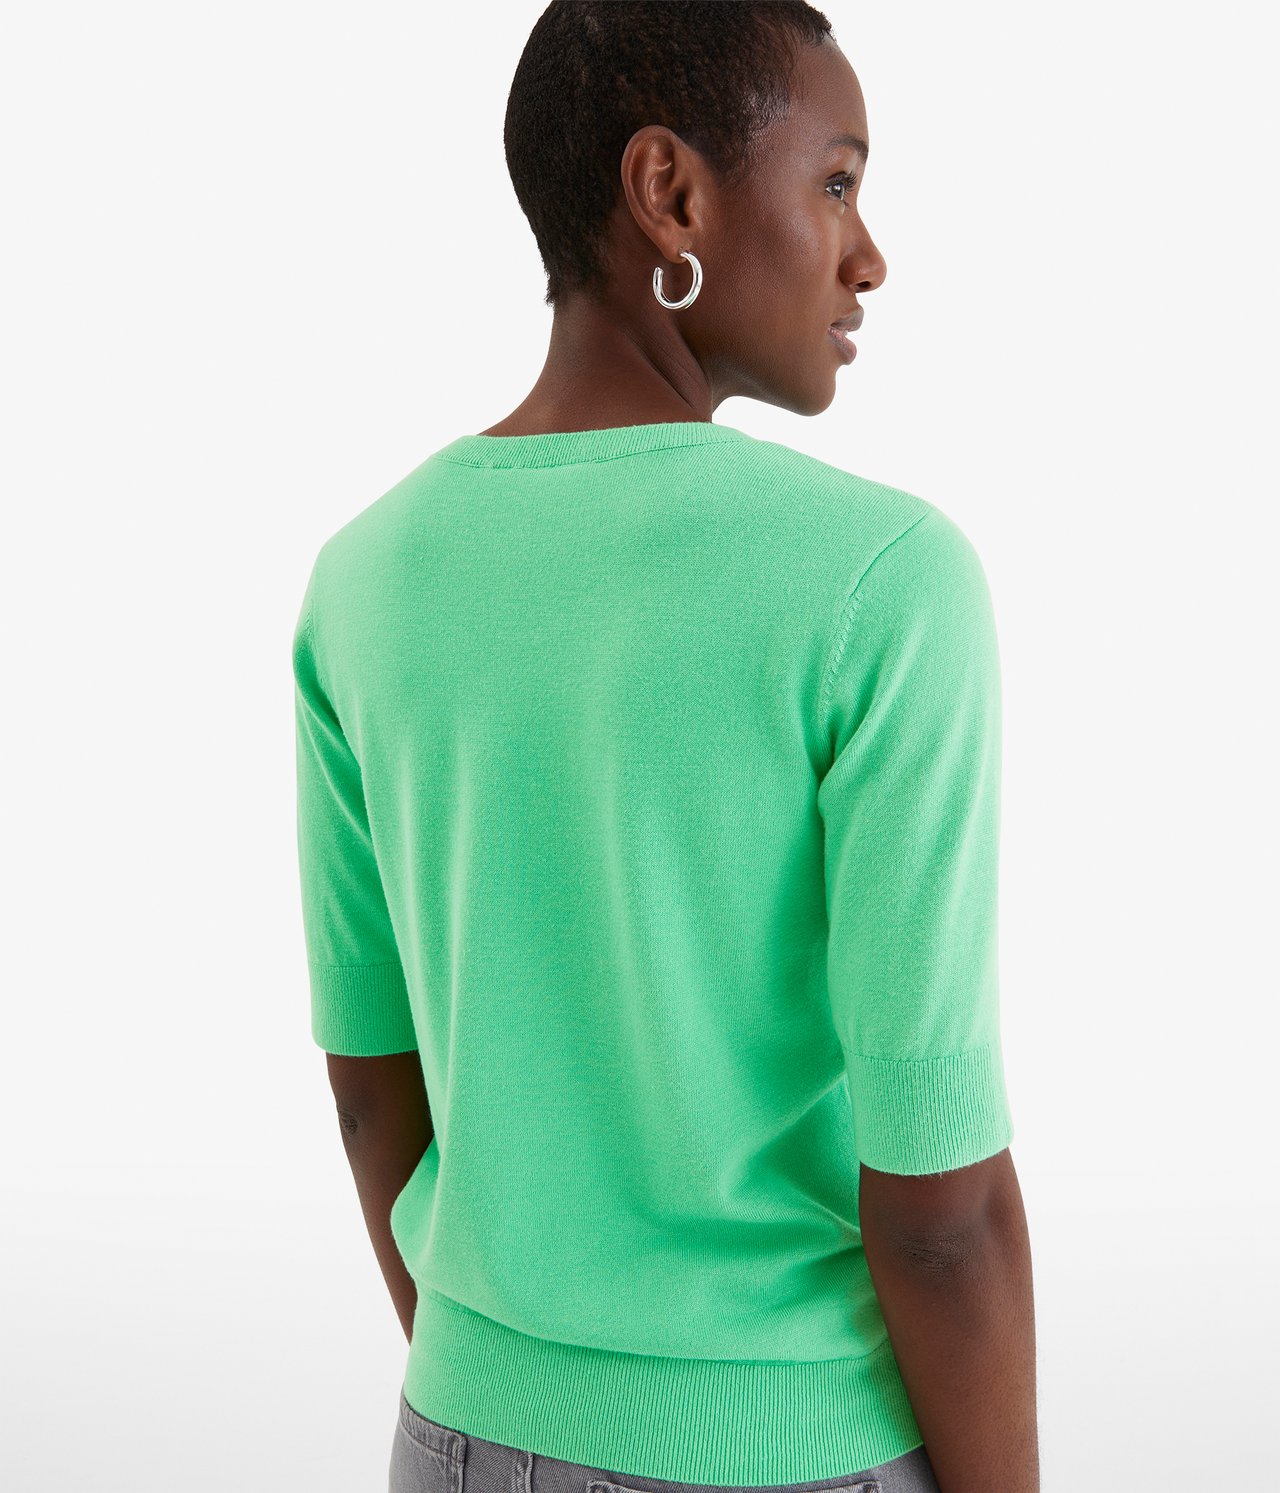 Strikket genser med kort arm Grønn - null - 2